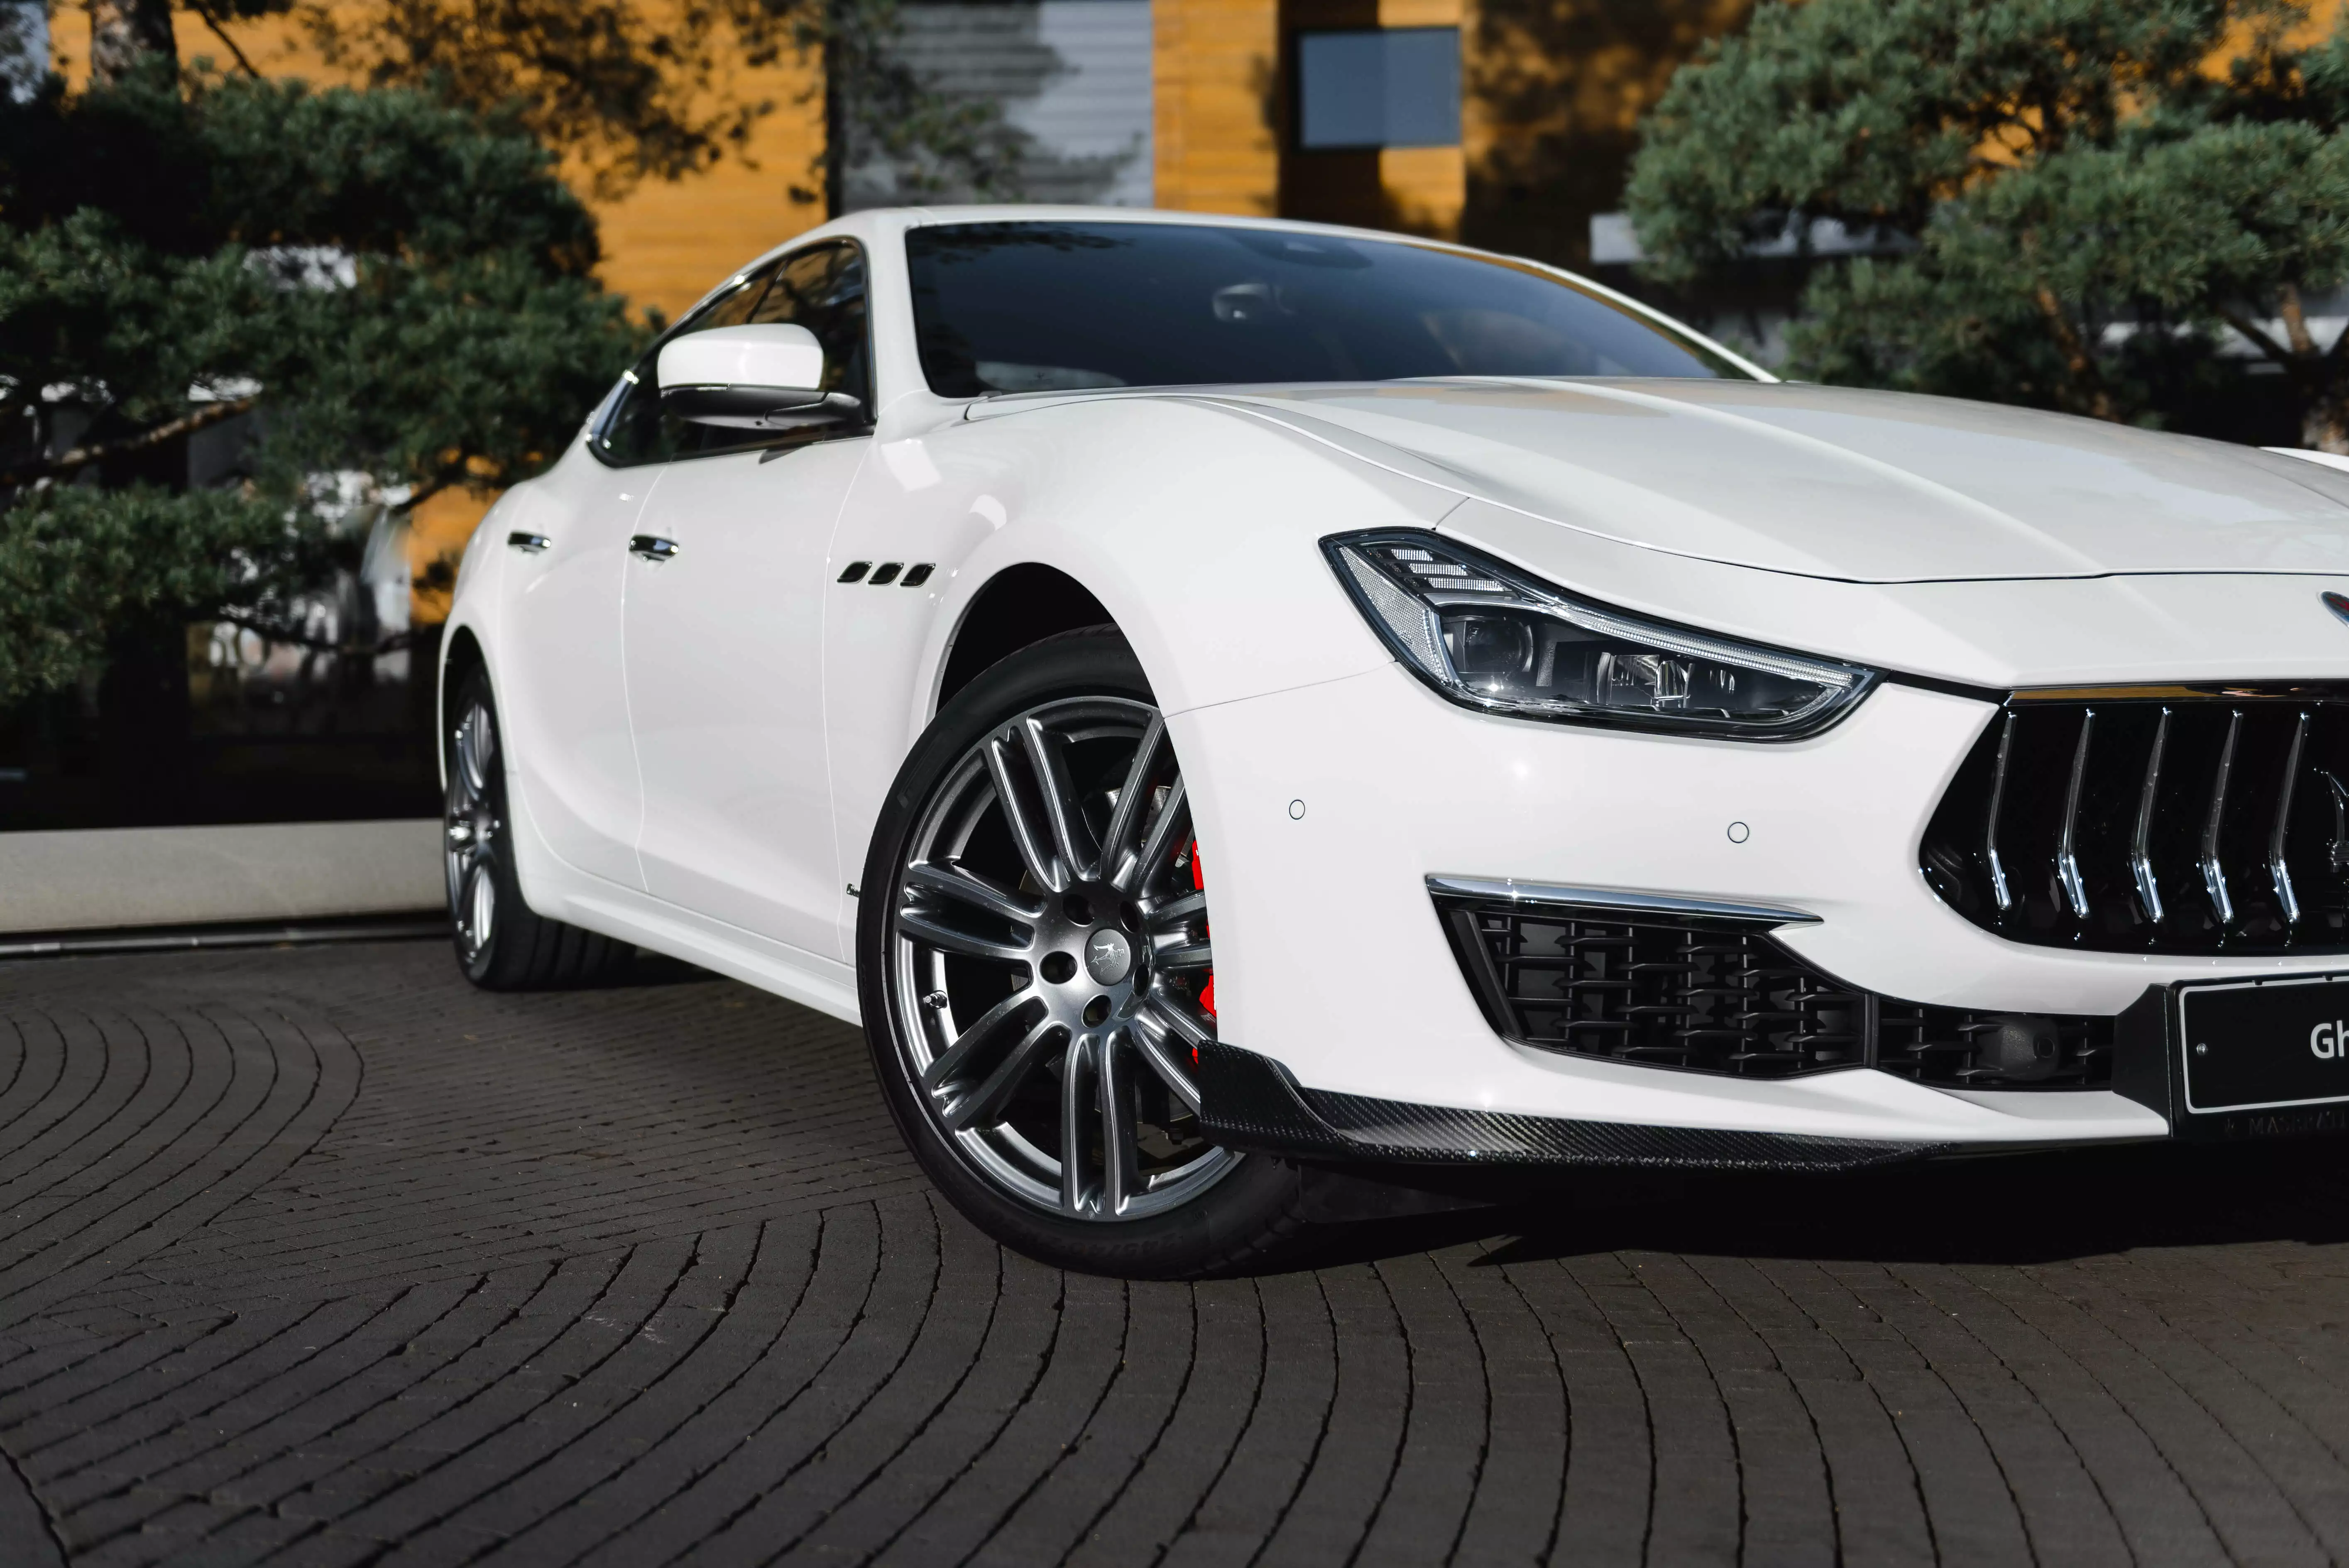 Erwerben Sie ein neues aerodynamisches Karbonfaser-Kit für den Maserati Ghibli Modena 4trg. mit weißem Exterieur